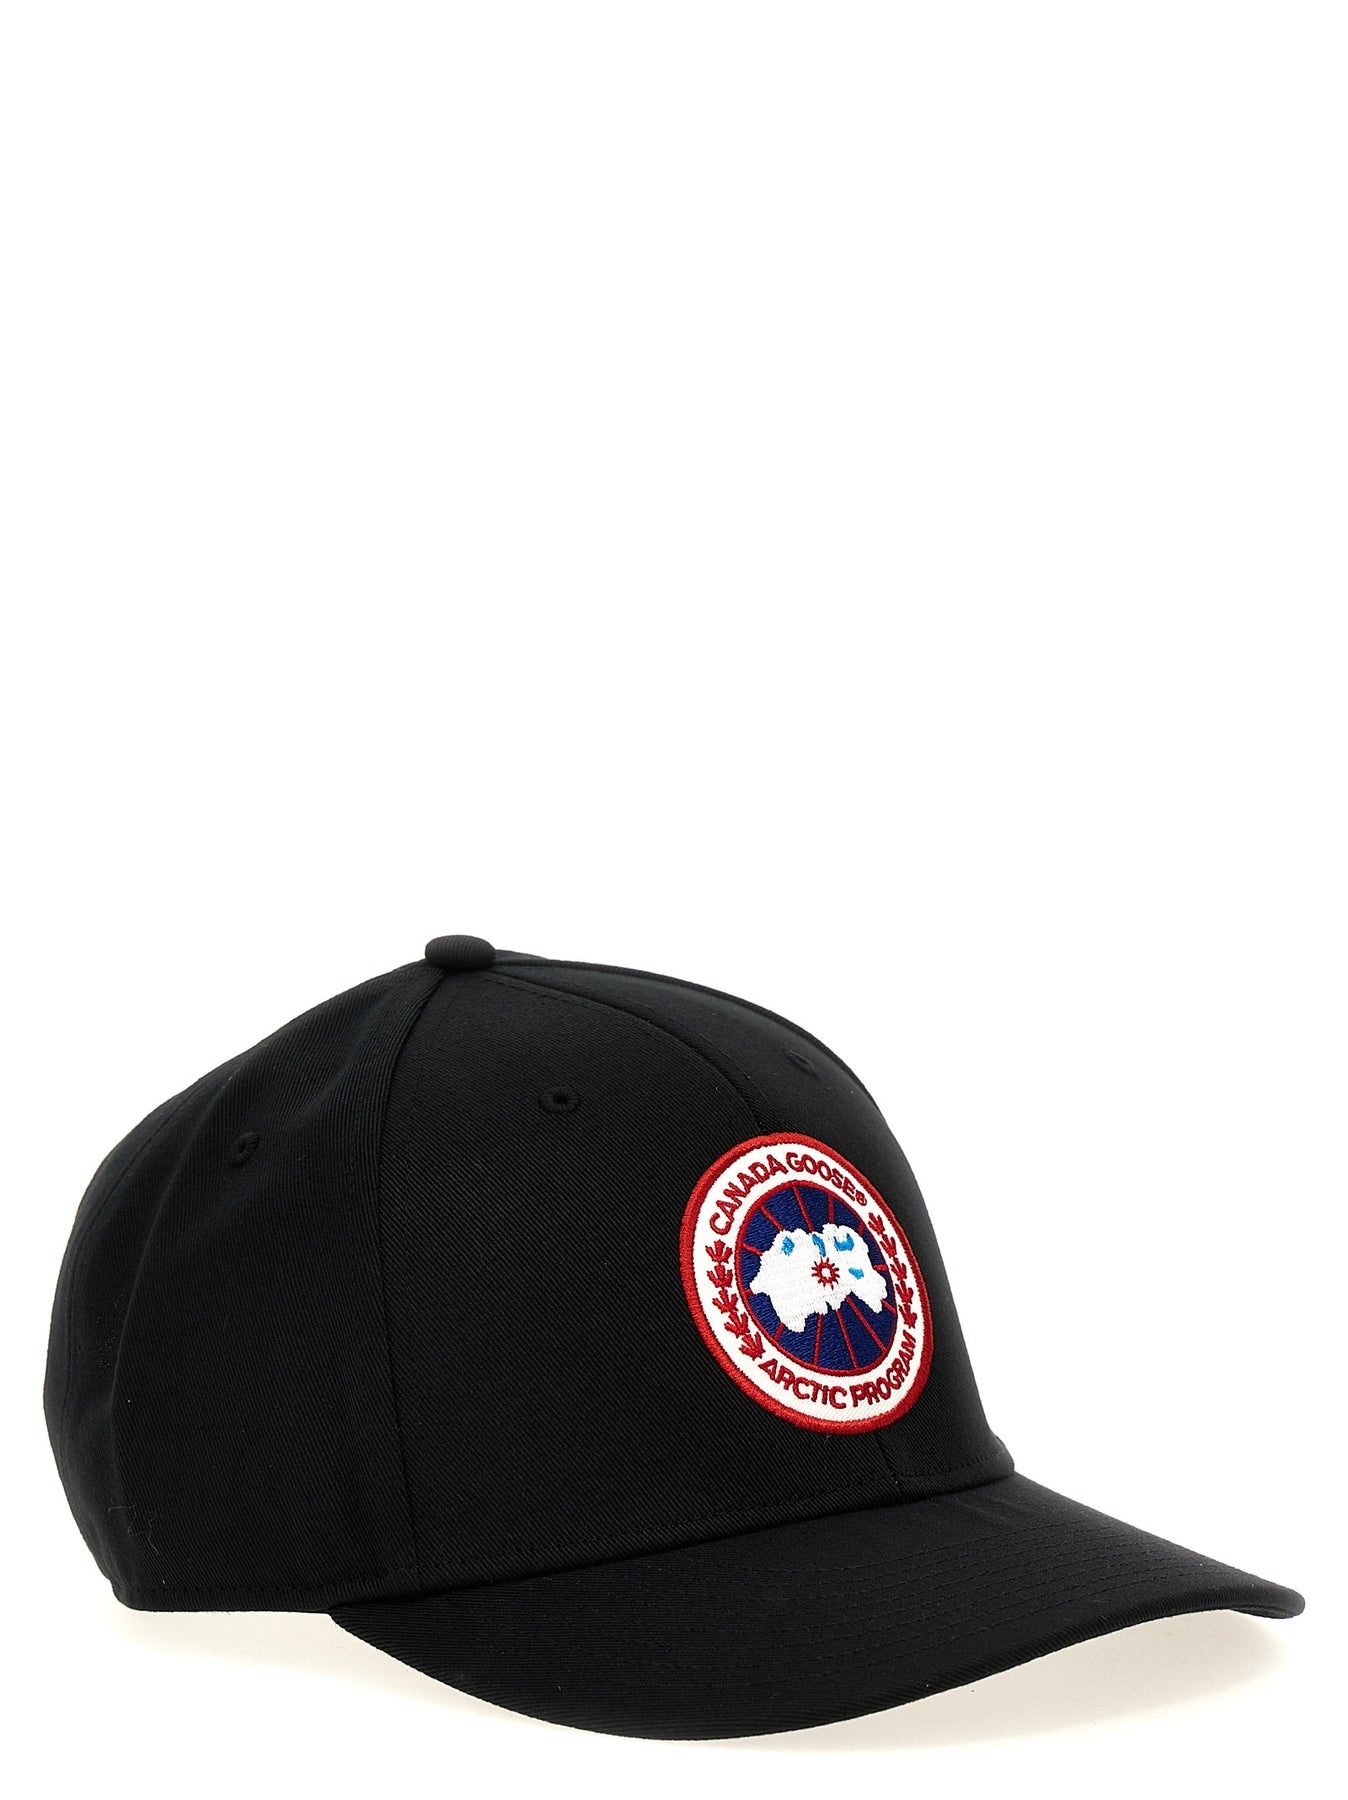 Cg Arctic Hats Black - 2